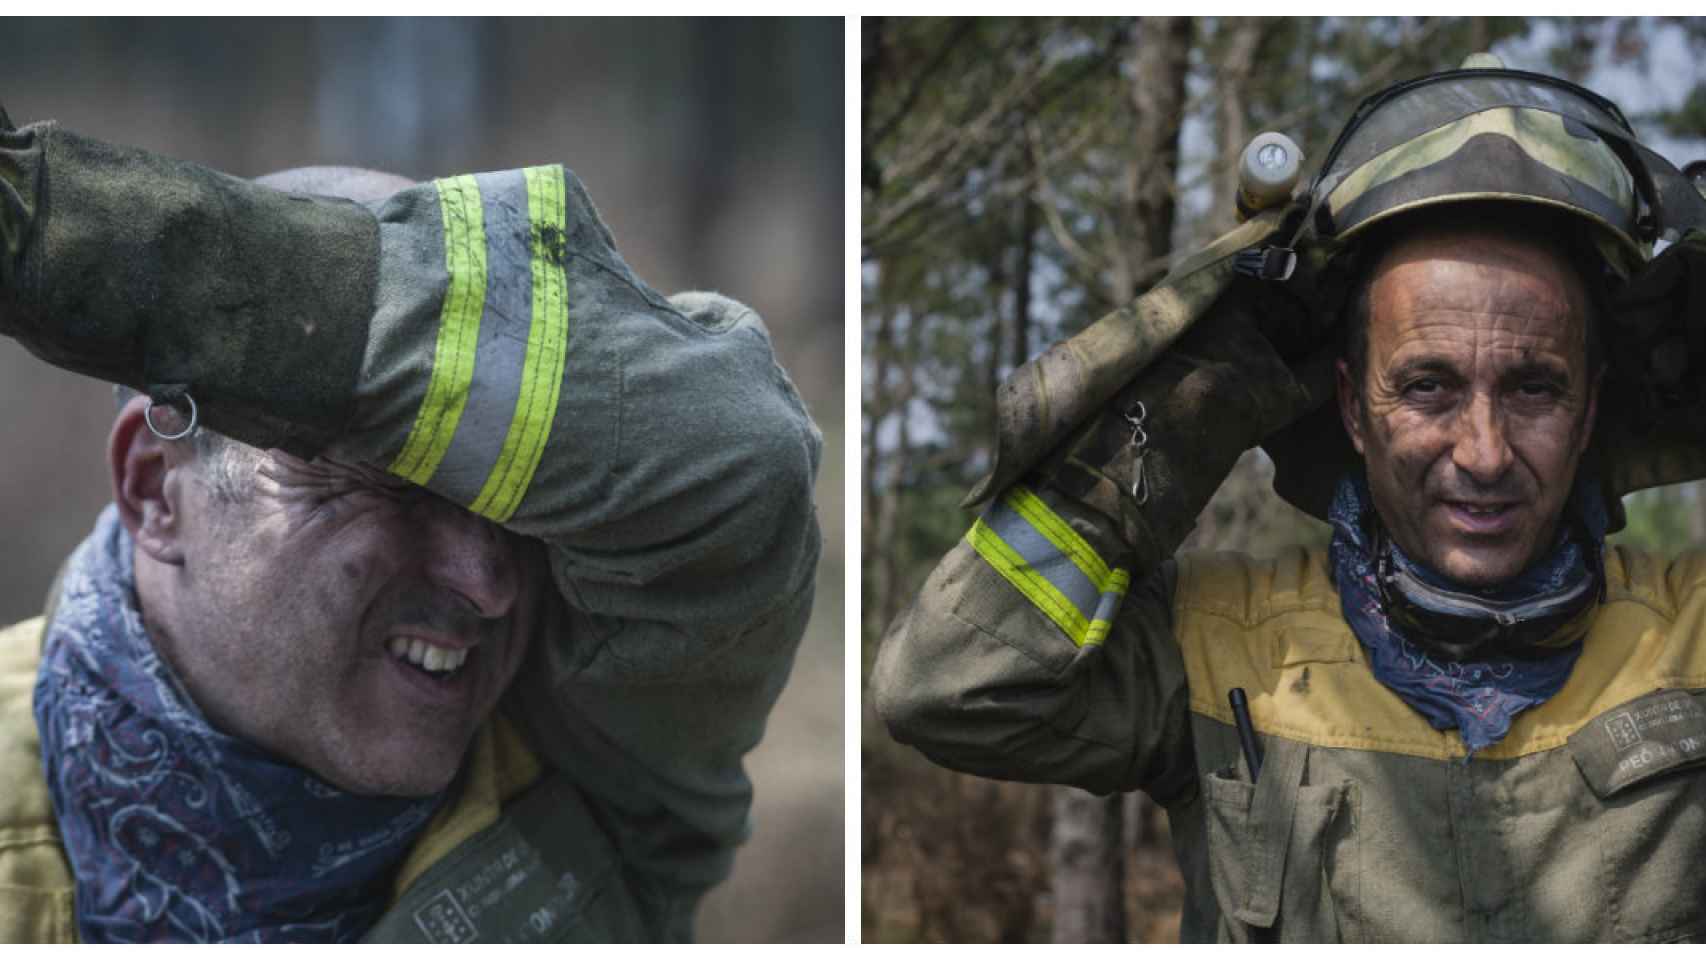 Los bomberos van cubiertos de pies a cabeza con ropa resistente a las llamas. El calor y la intensidad del trabajo les puede hacer perder varios kilos mientras apagan un solo incendio.